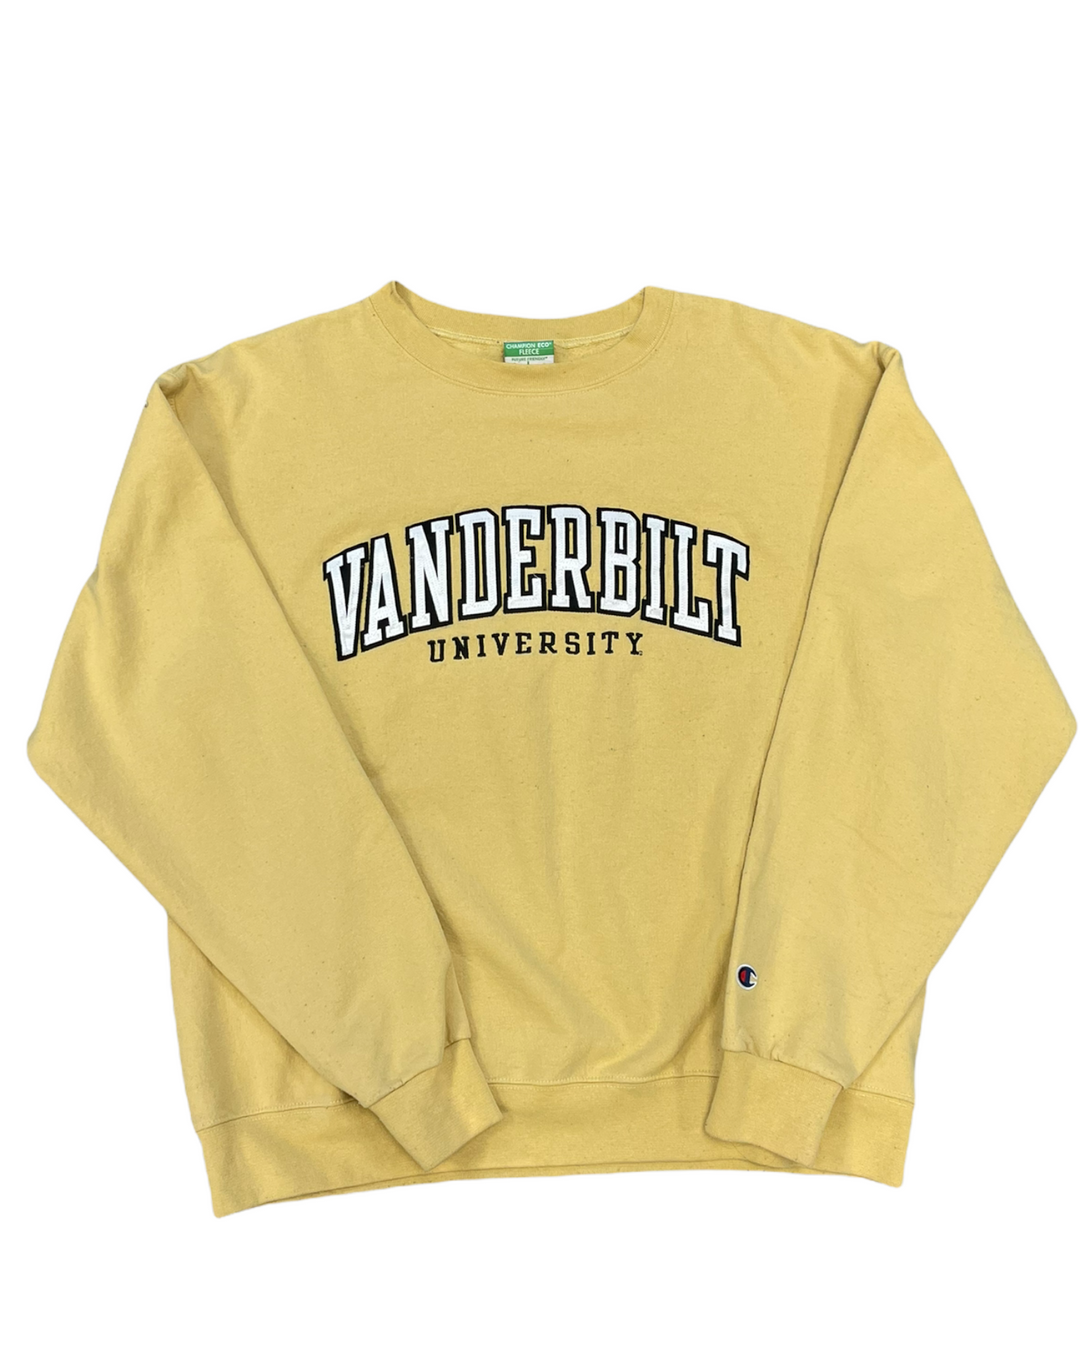 Vanderbilt Vintage Sweatshirt